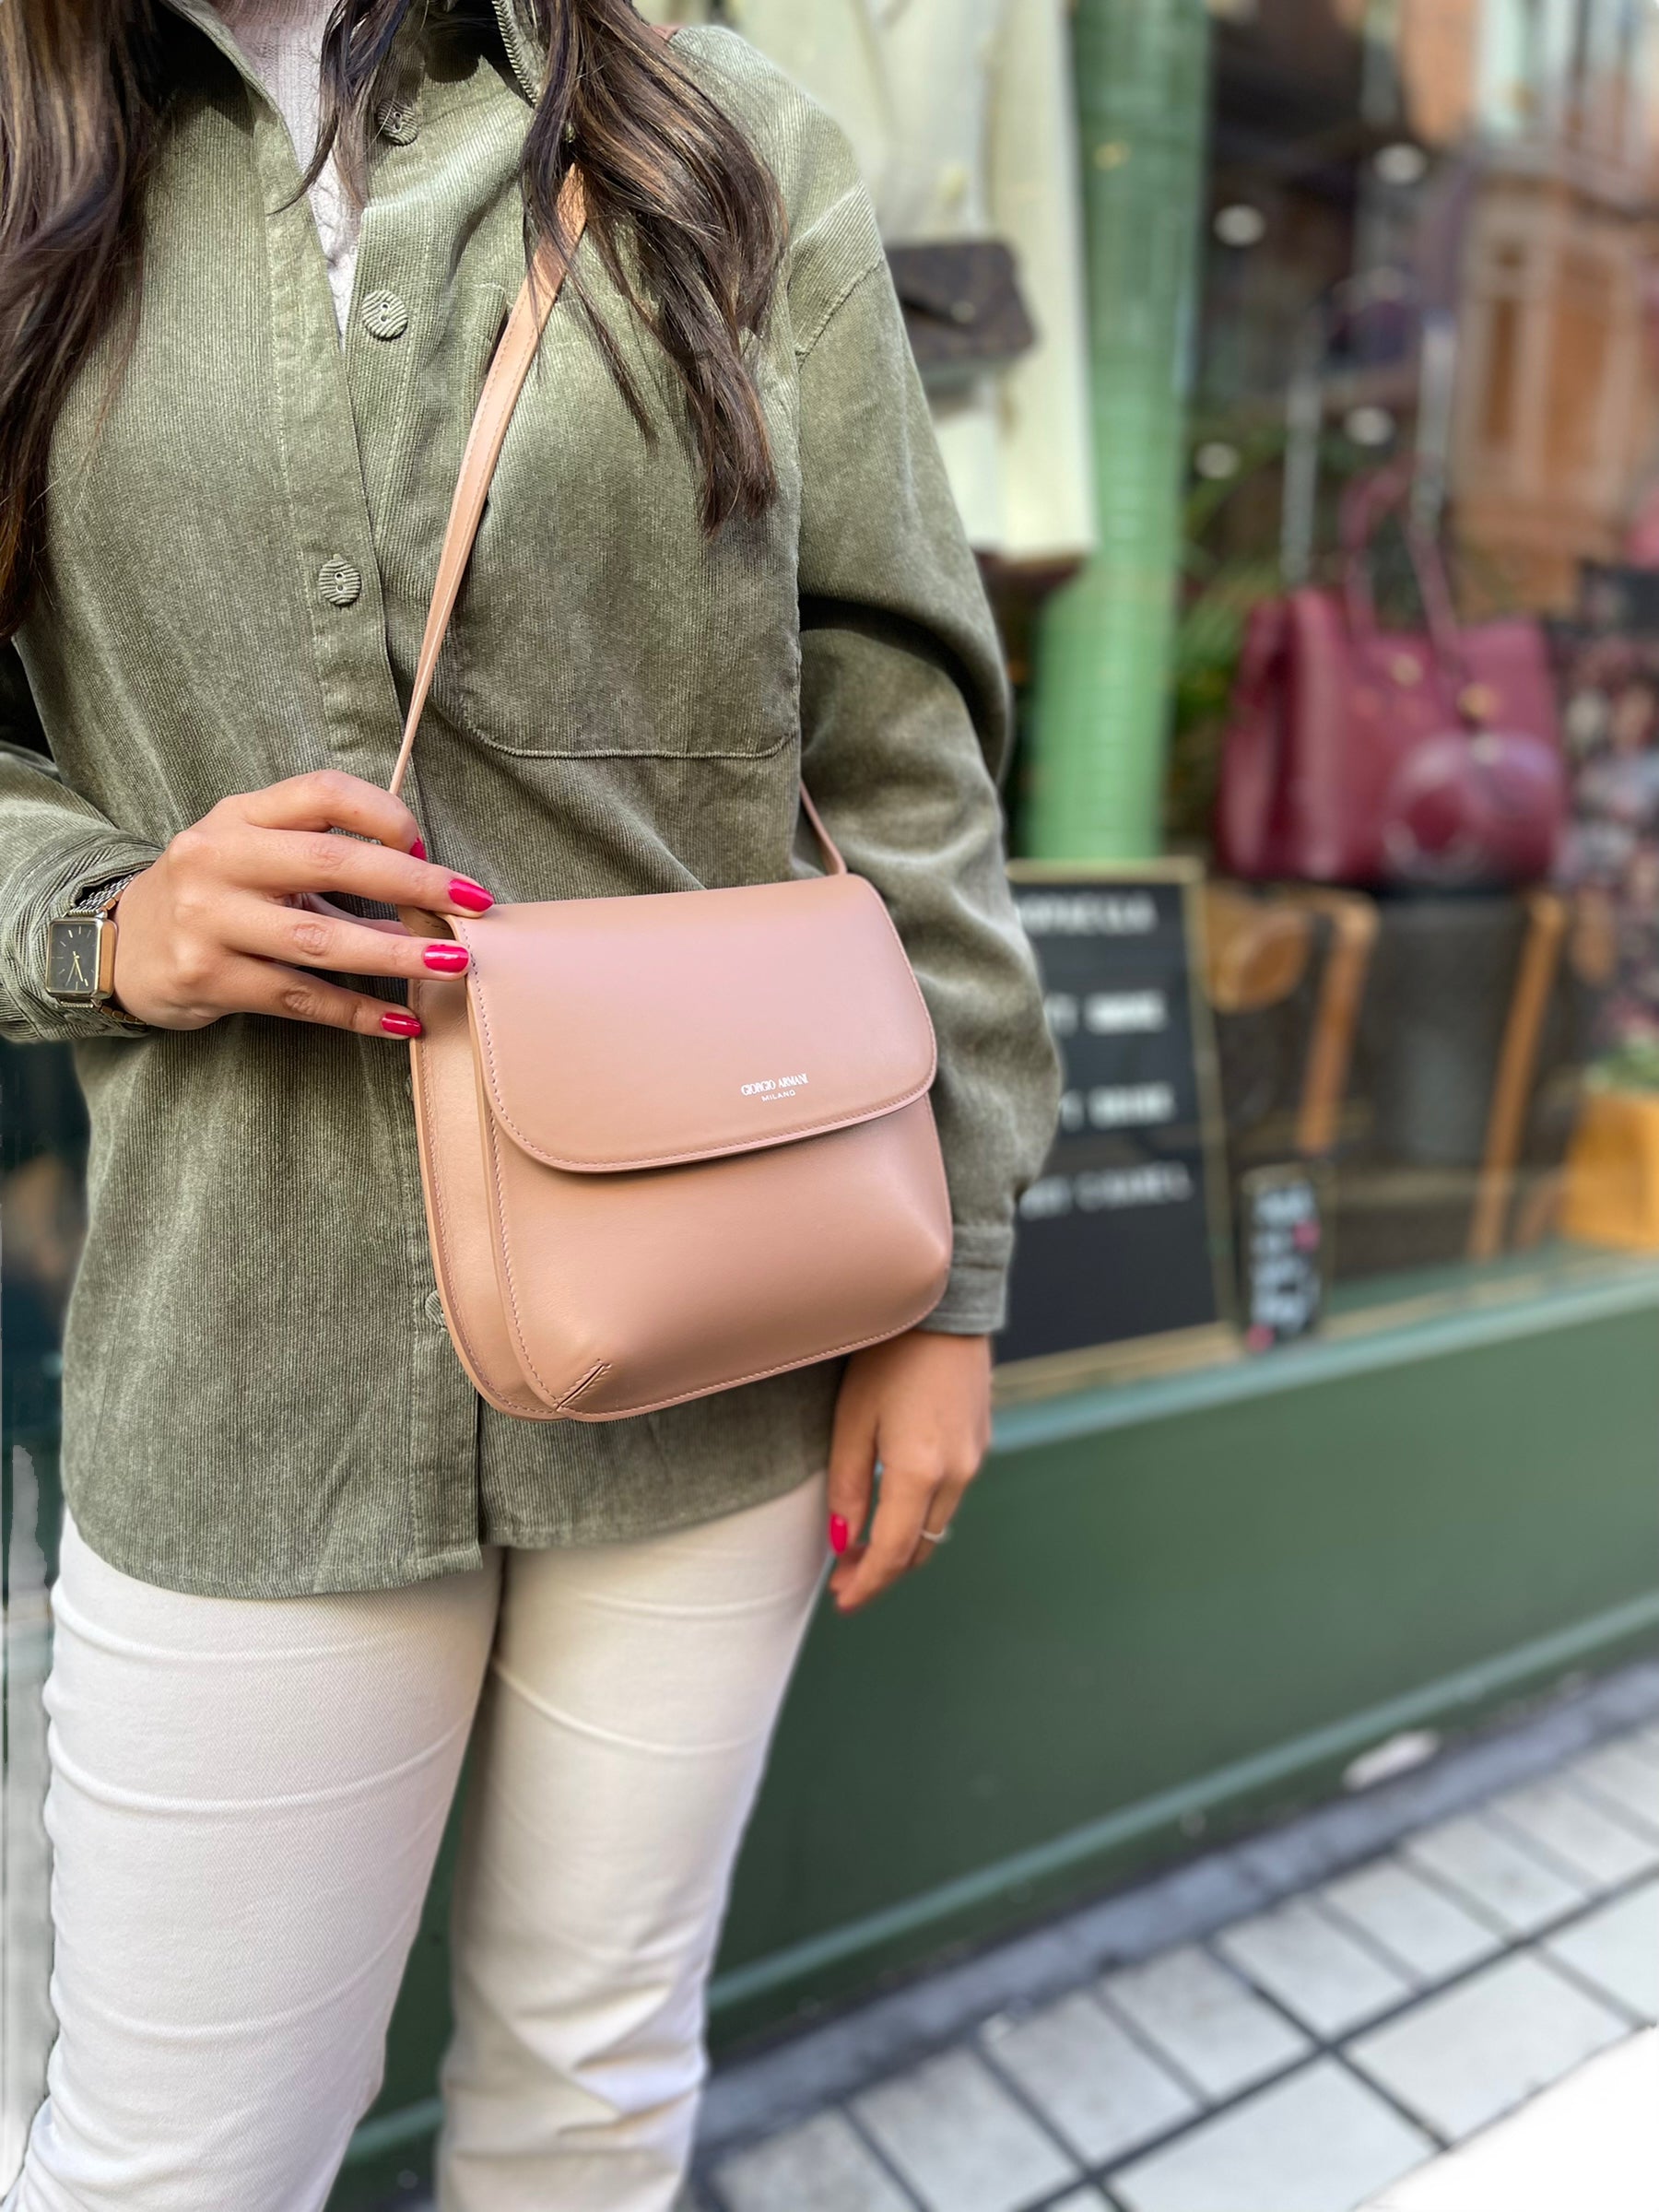 Giorgio Armani Tan Leather 'La Prima' Shoulder Bag – Siopaella